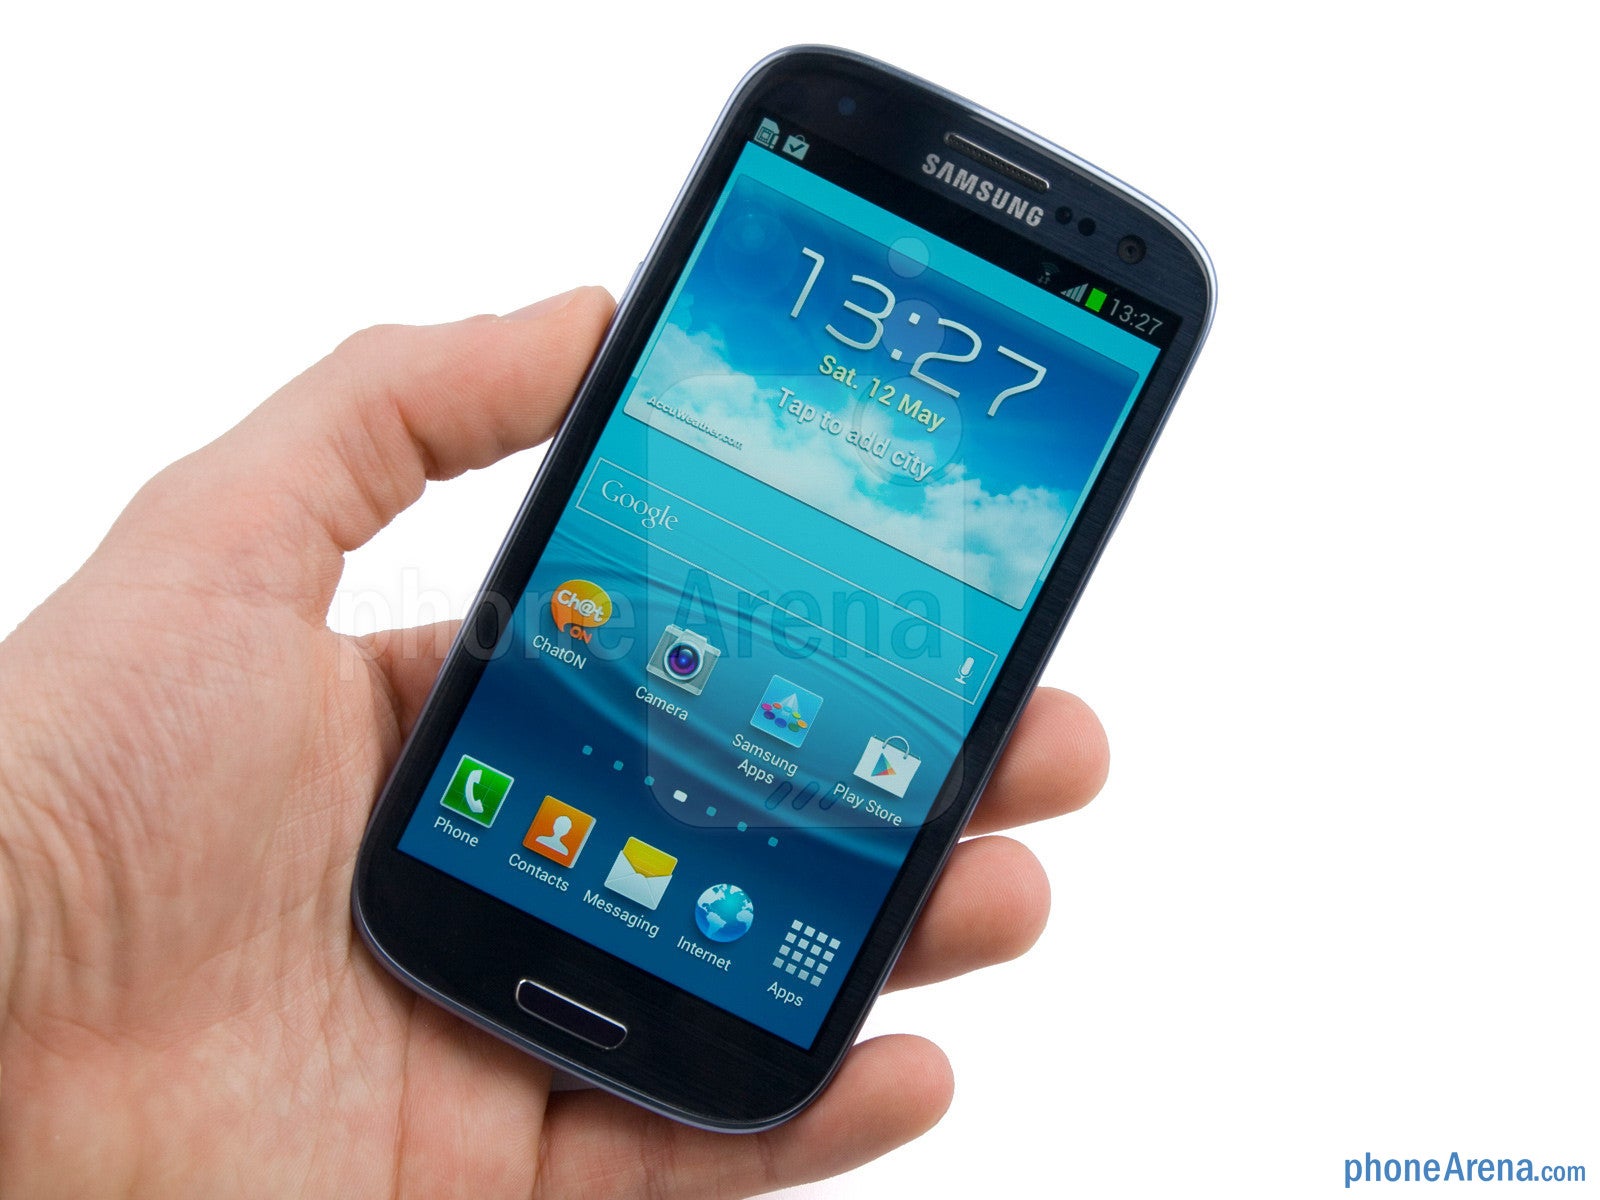 S 003. Samsung Galaxy s3 2012. Samsung Galaxy s3. Samsung Galaxy s III. Samsung Galaxy s3 Mini.